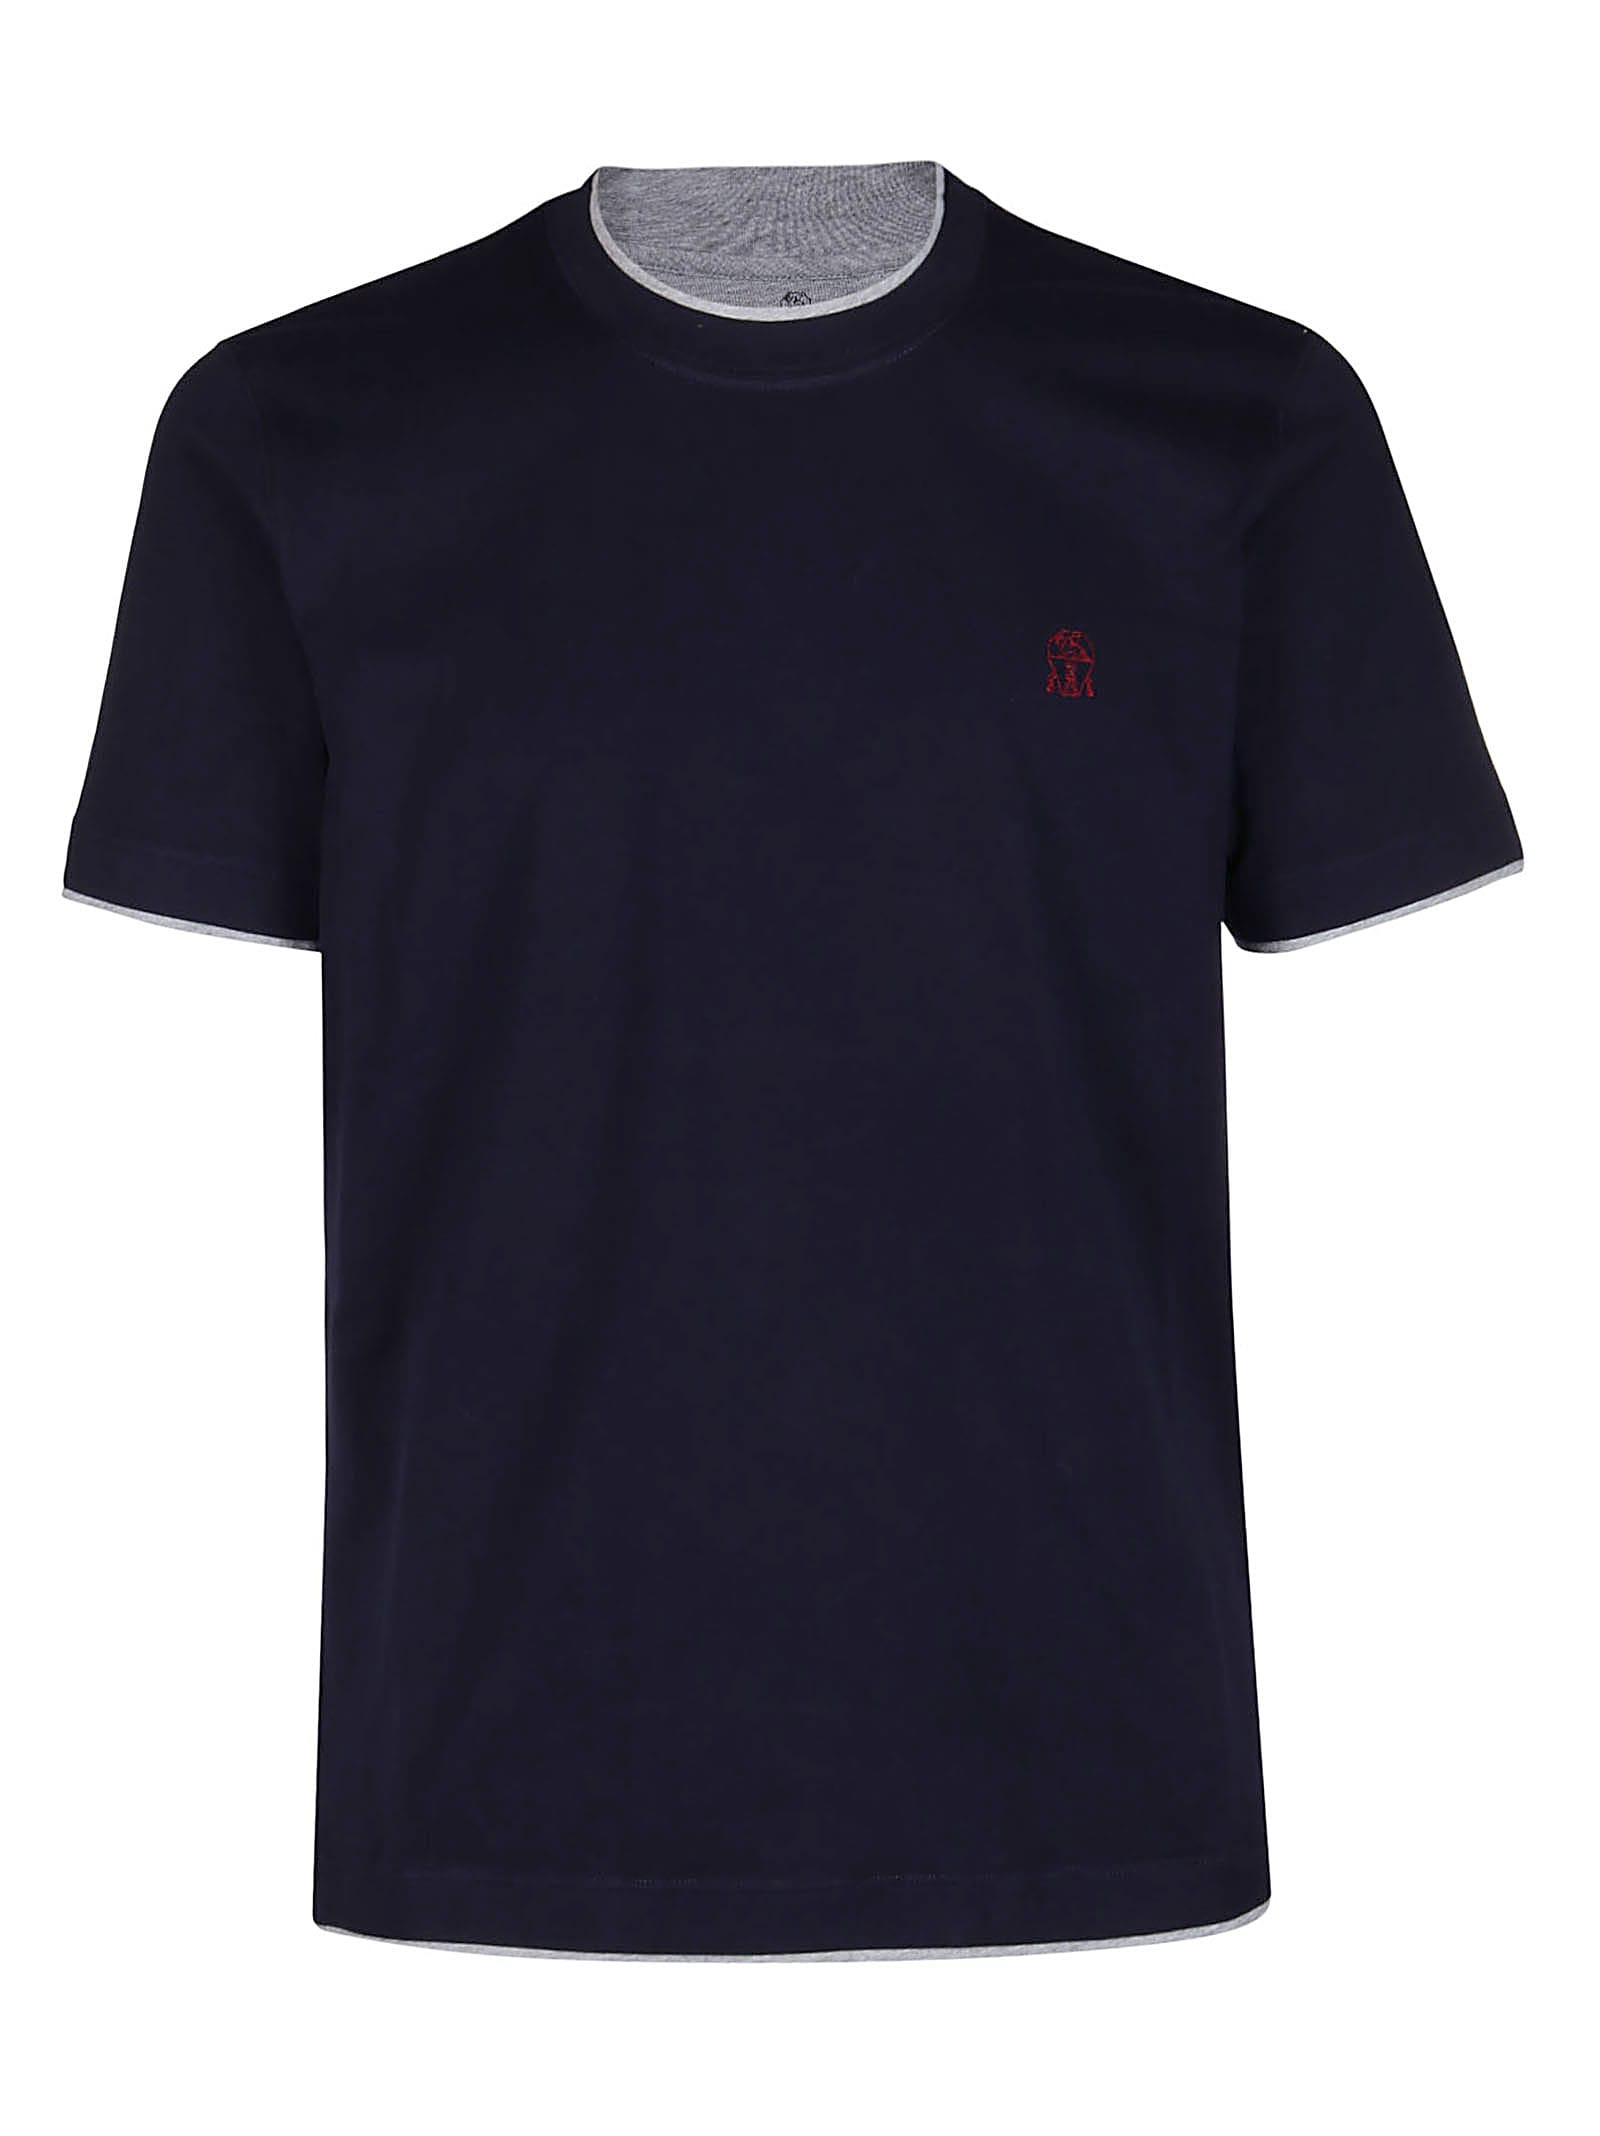 Brunello Cucinelli Navy Blue Cotton T-shirt